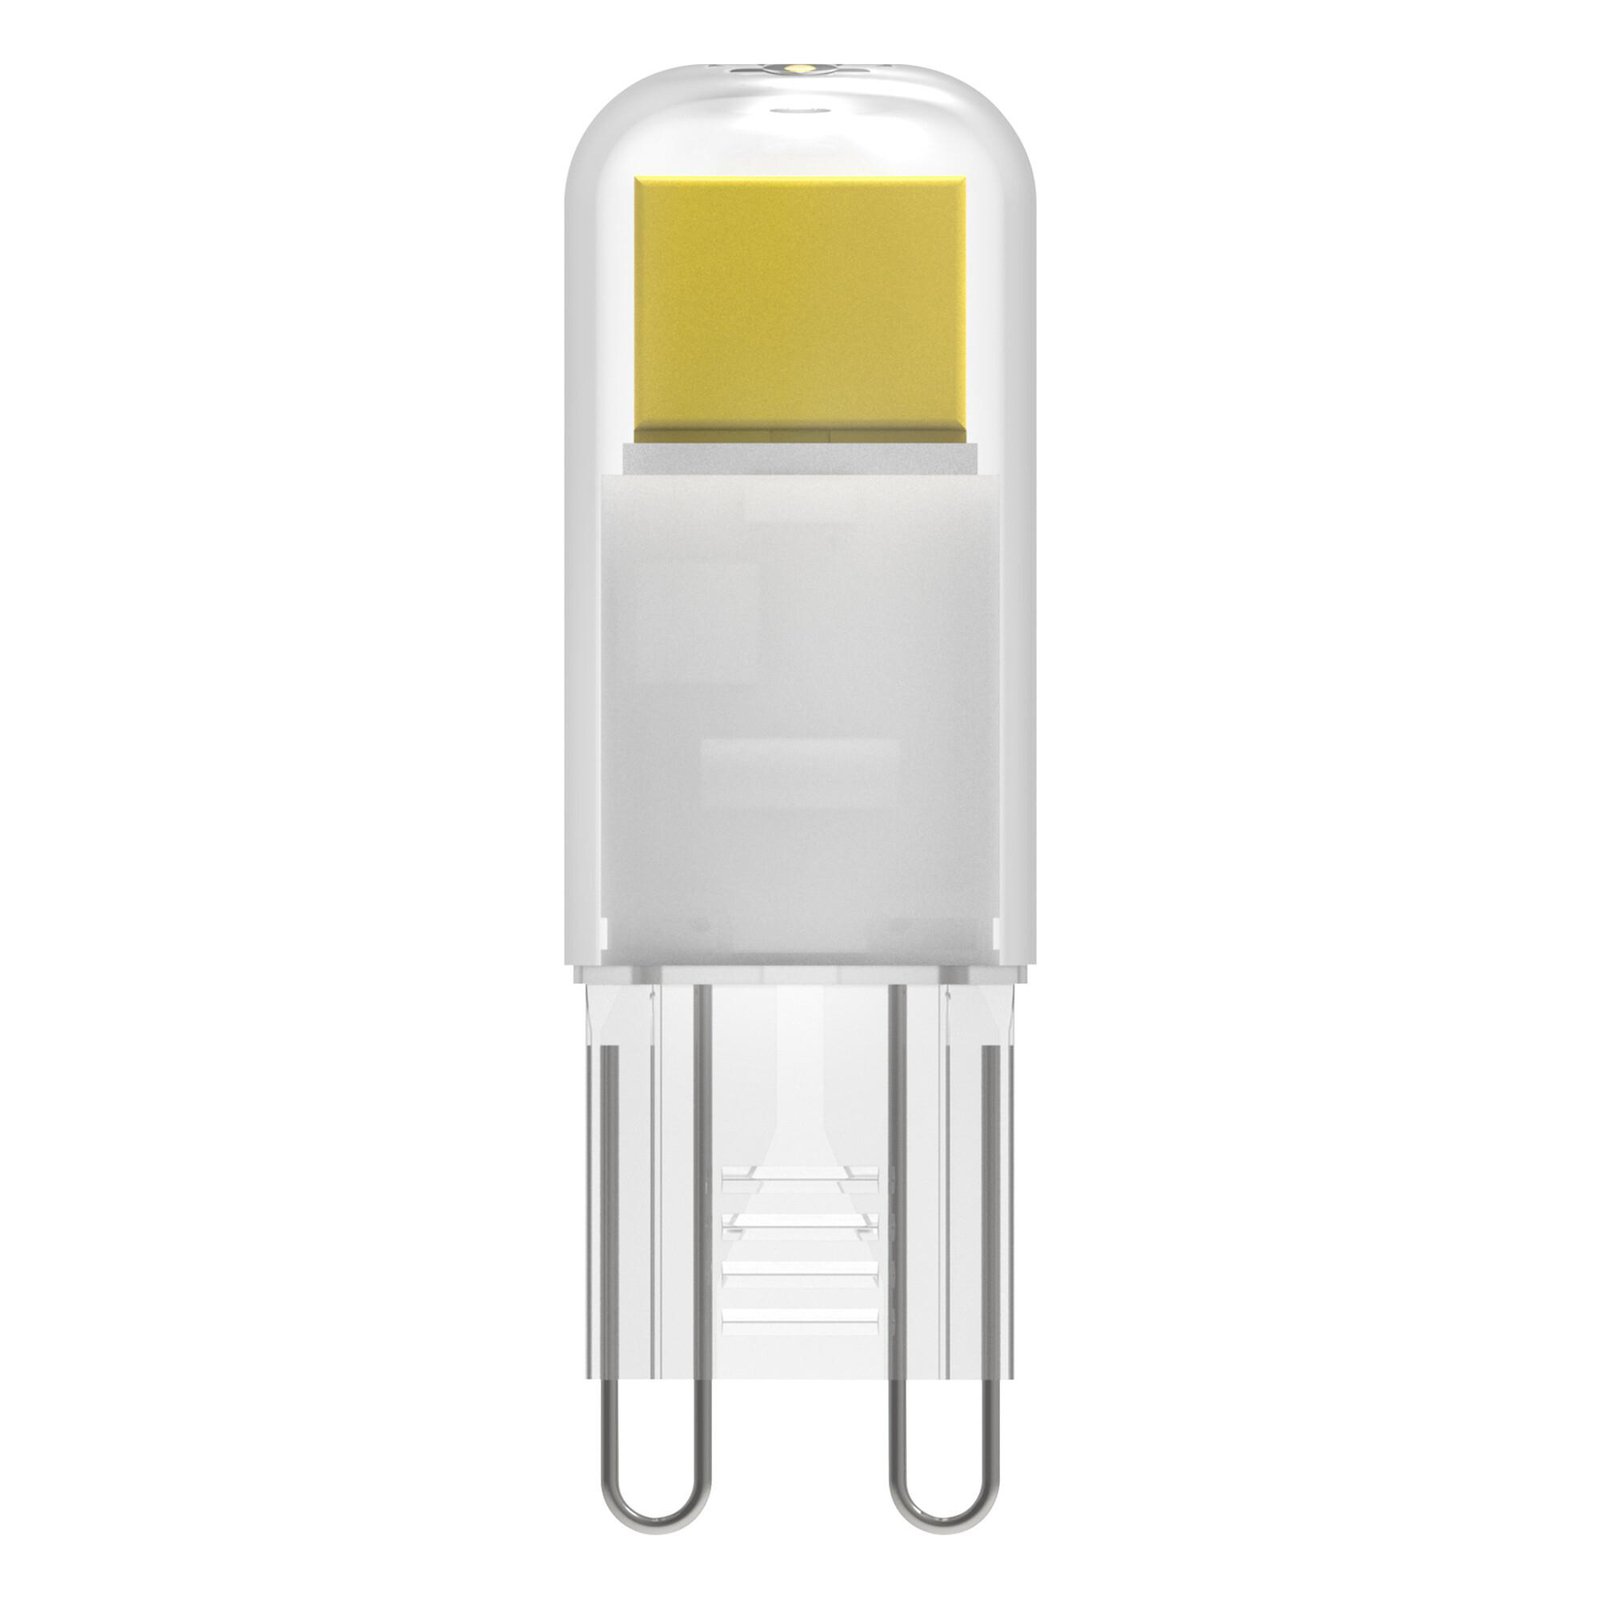 Lâmpada LED OSRAM com casquilho G9 1.8 W transparente 2,700 K